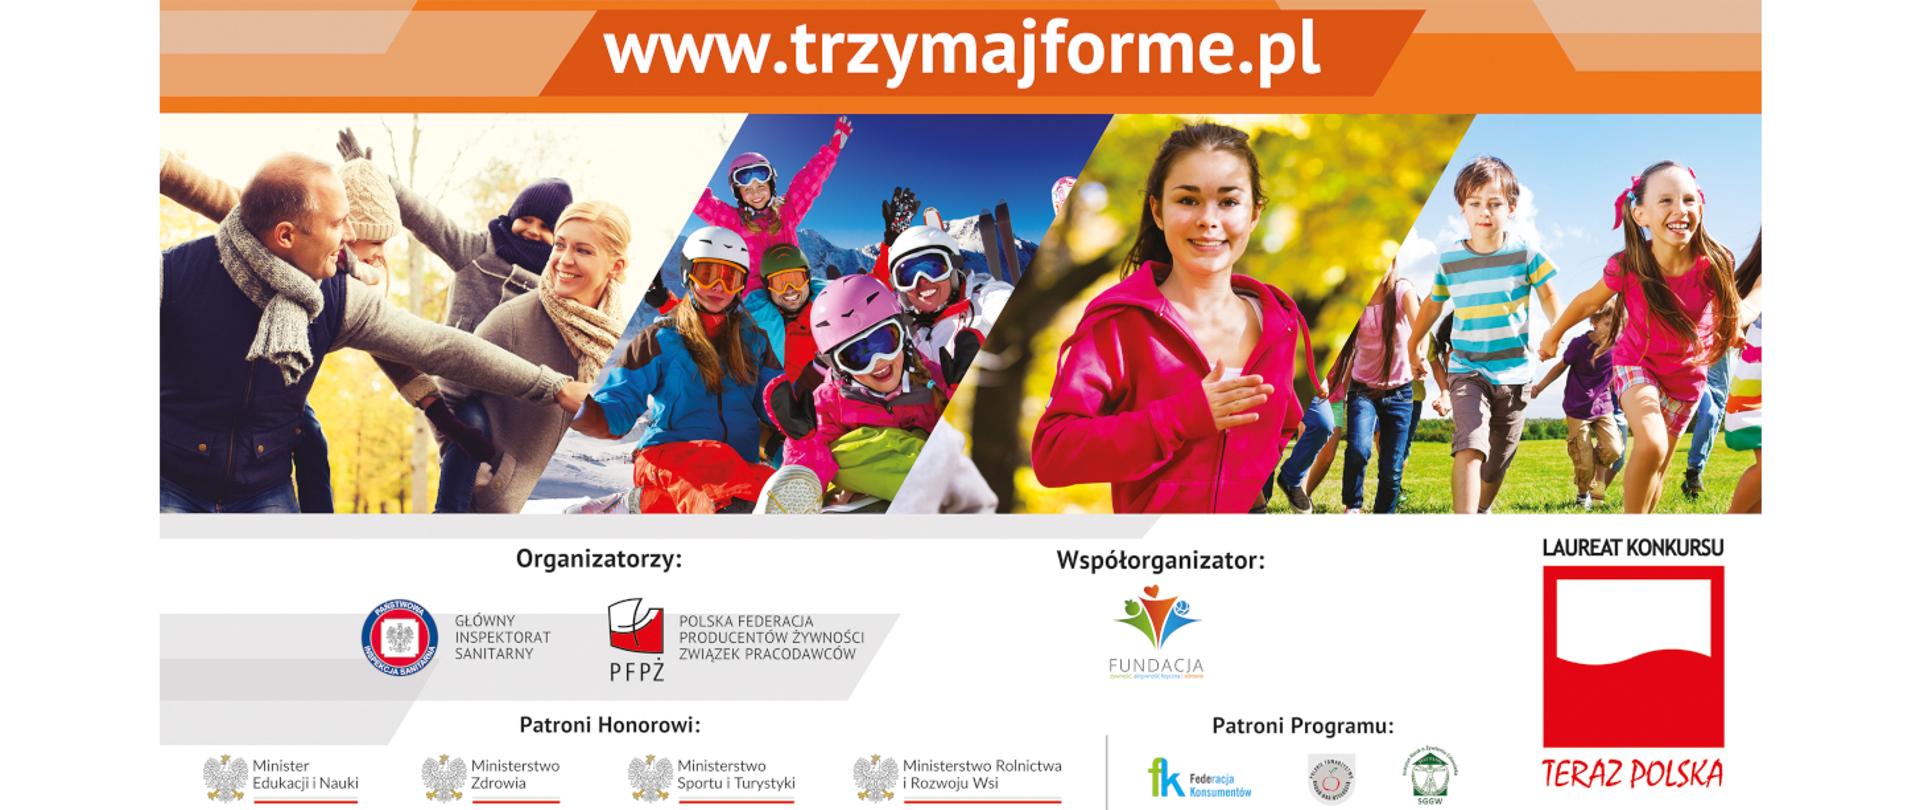 kolaż zdjęć: rodzina aktywna fizycznie, rodzina na nartach, młoda dziewczyna biegnie, biegnąca grupa dzieci, kolażem ze zdjęć logotypy instytucji i organizacji, nad kolażem zdjęć pomarańczowy baner z napisem www.trzymajforme.pl 